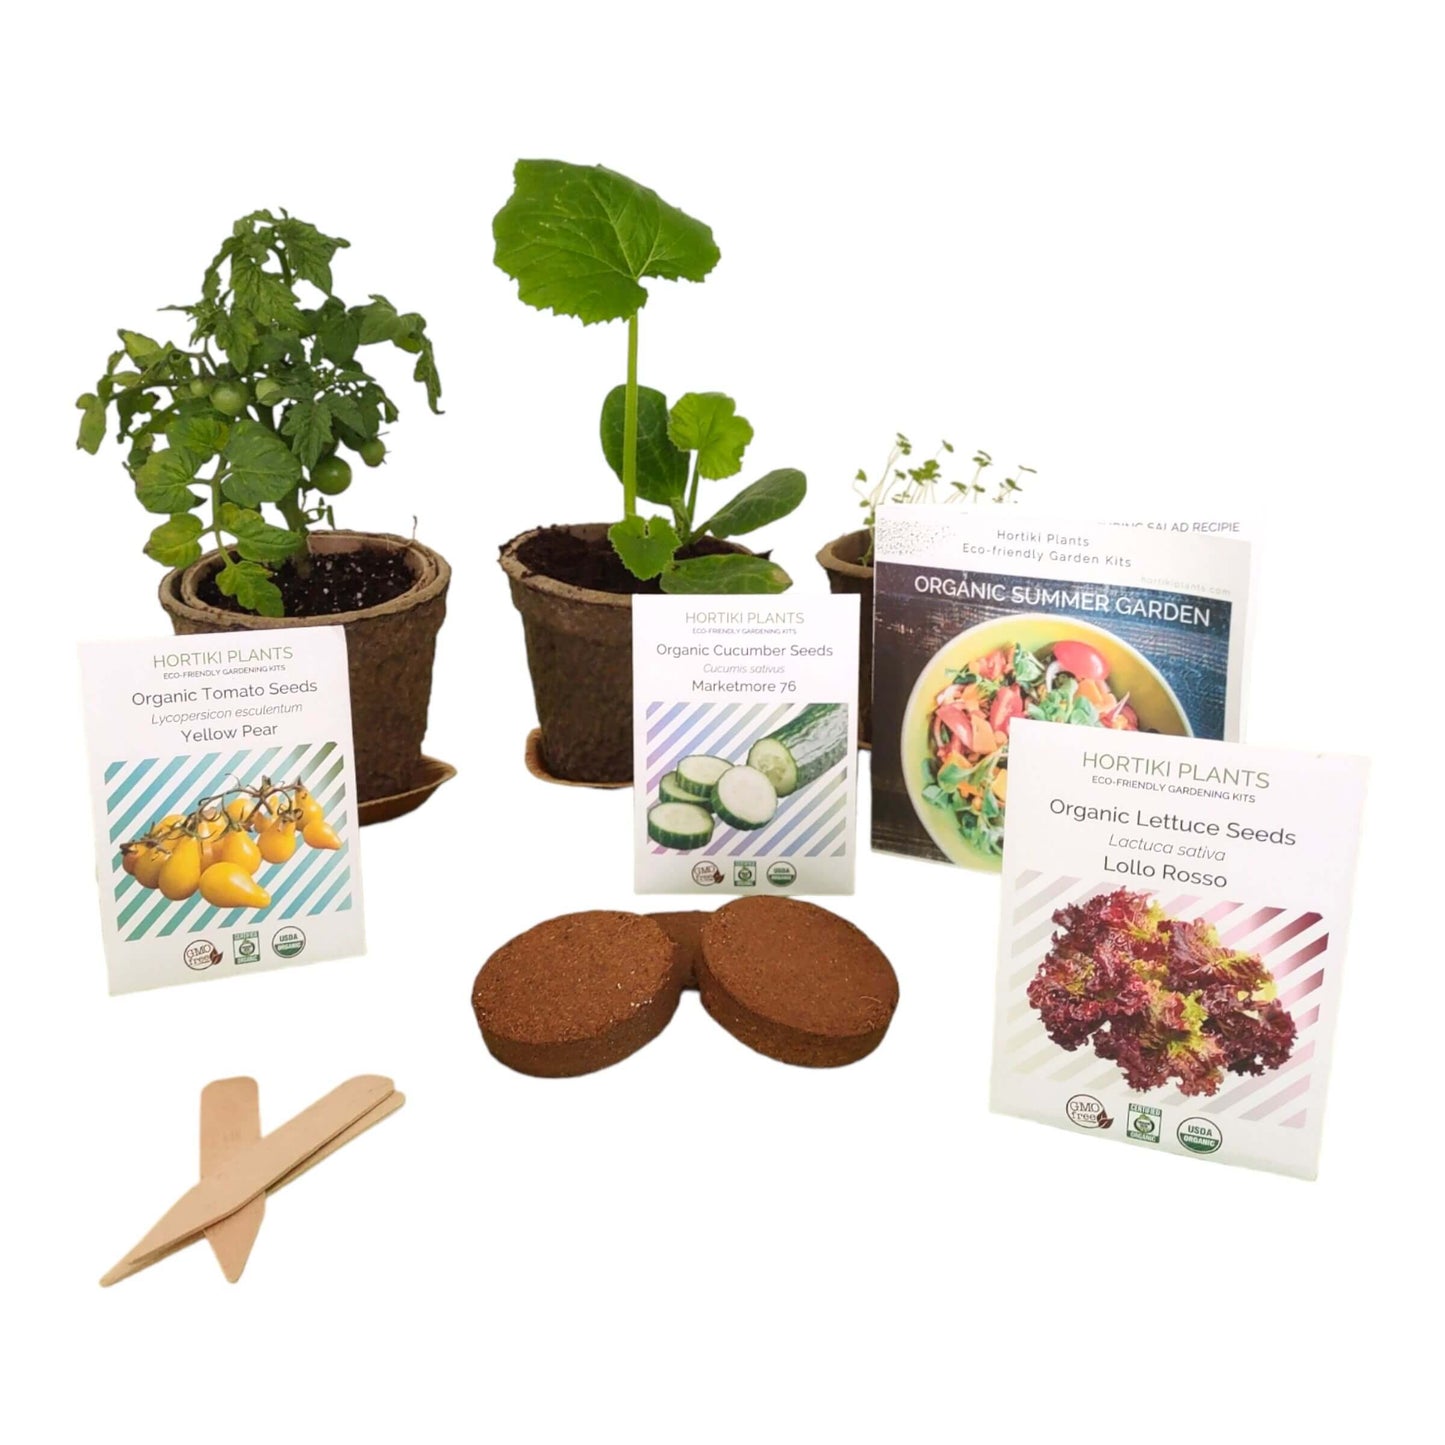 Organic Summer Garden Kit. Lettuce, Cucumber, Tomato Seed Starting Kit.